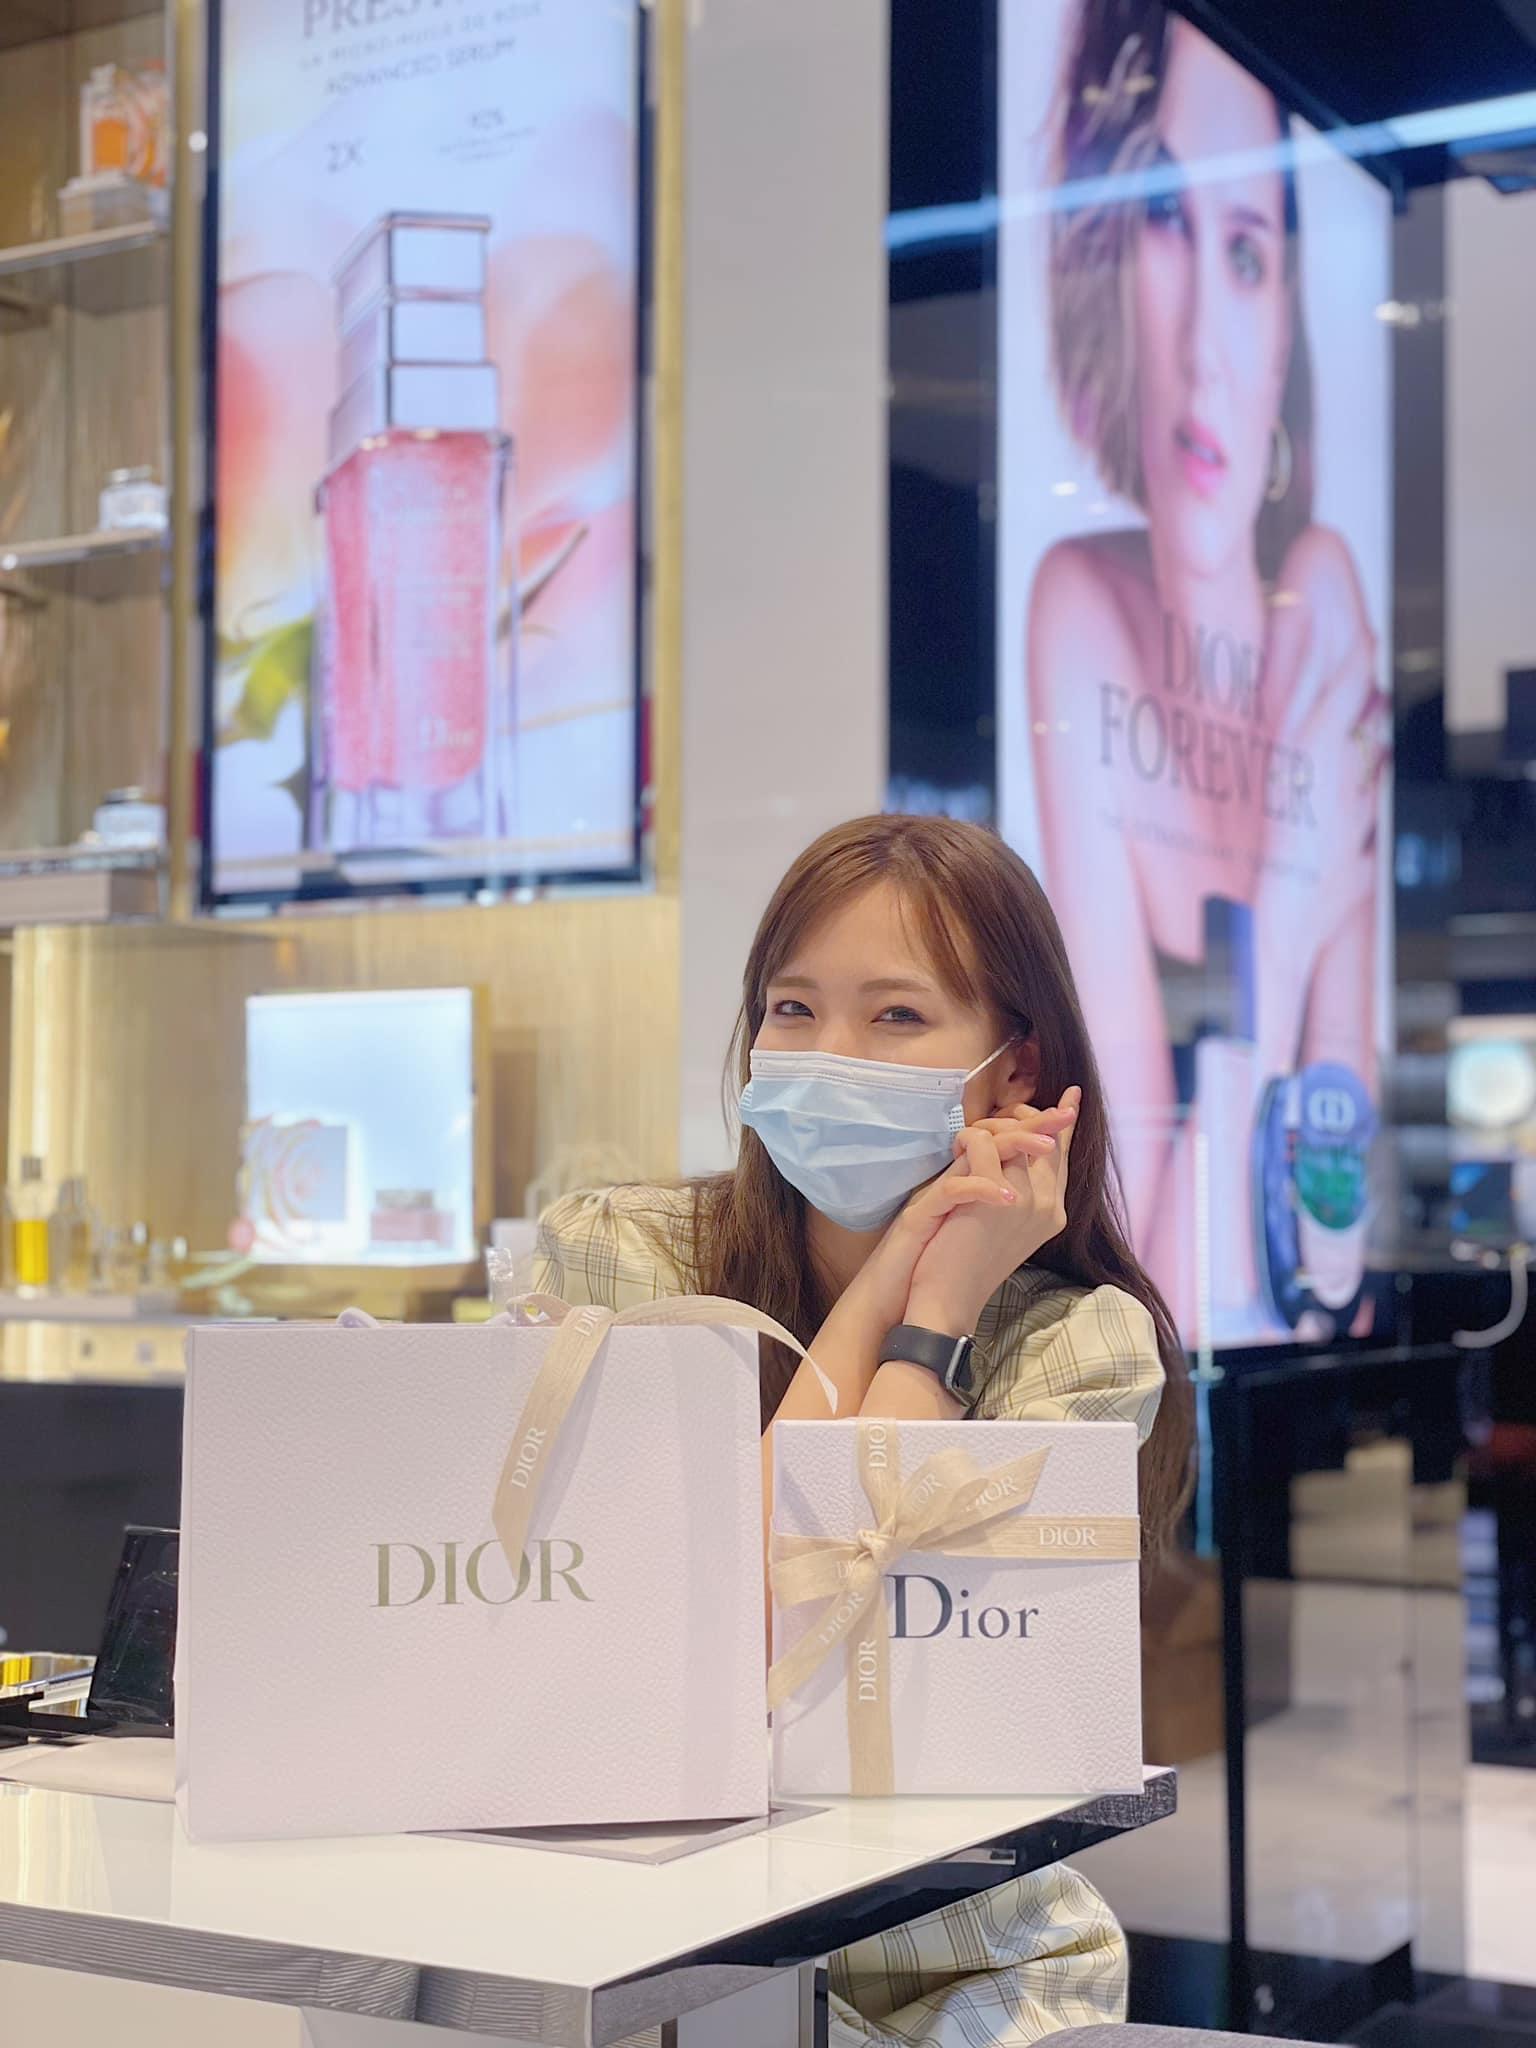 ภาพหน้าปก ครบรอบ 1 ปี เปิดตัว Miss Dior 2021 (โบว์ผ้า) หอมมากจนต้องกลับมาซื้อซ้ำ 💖 ที่:0